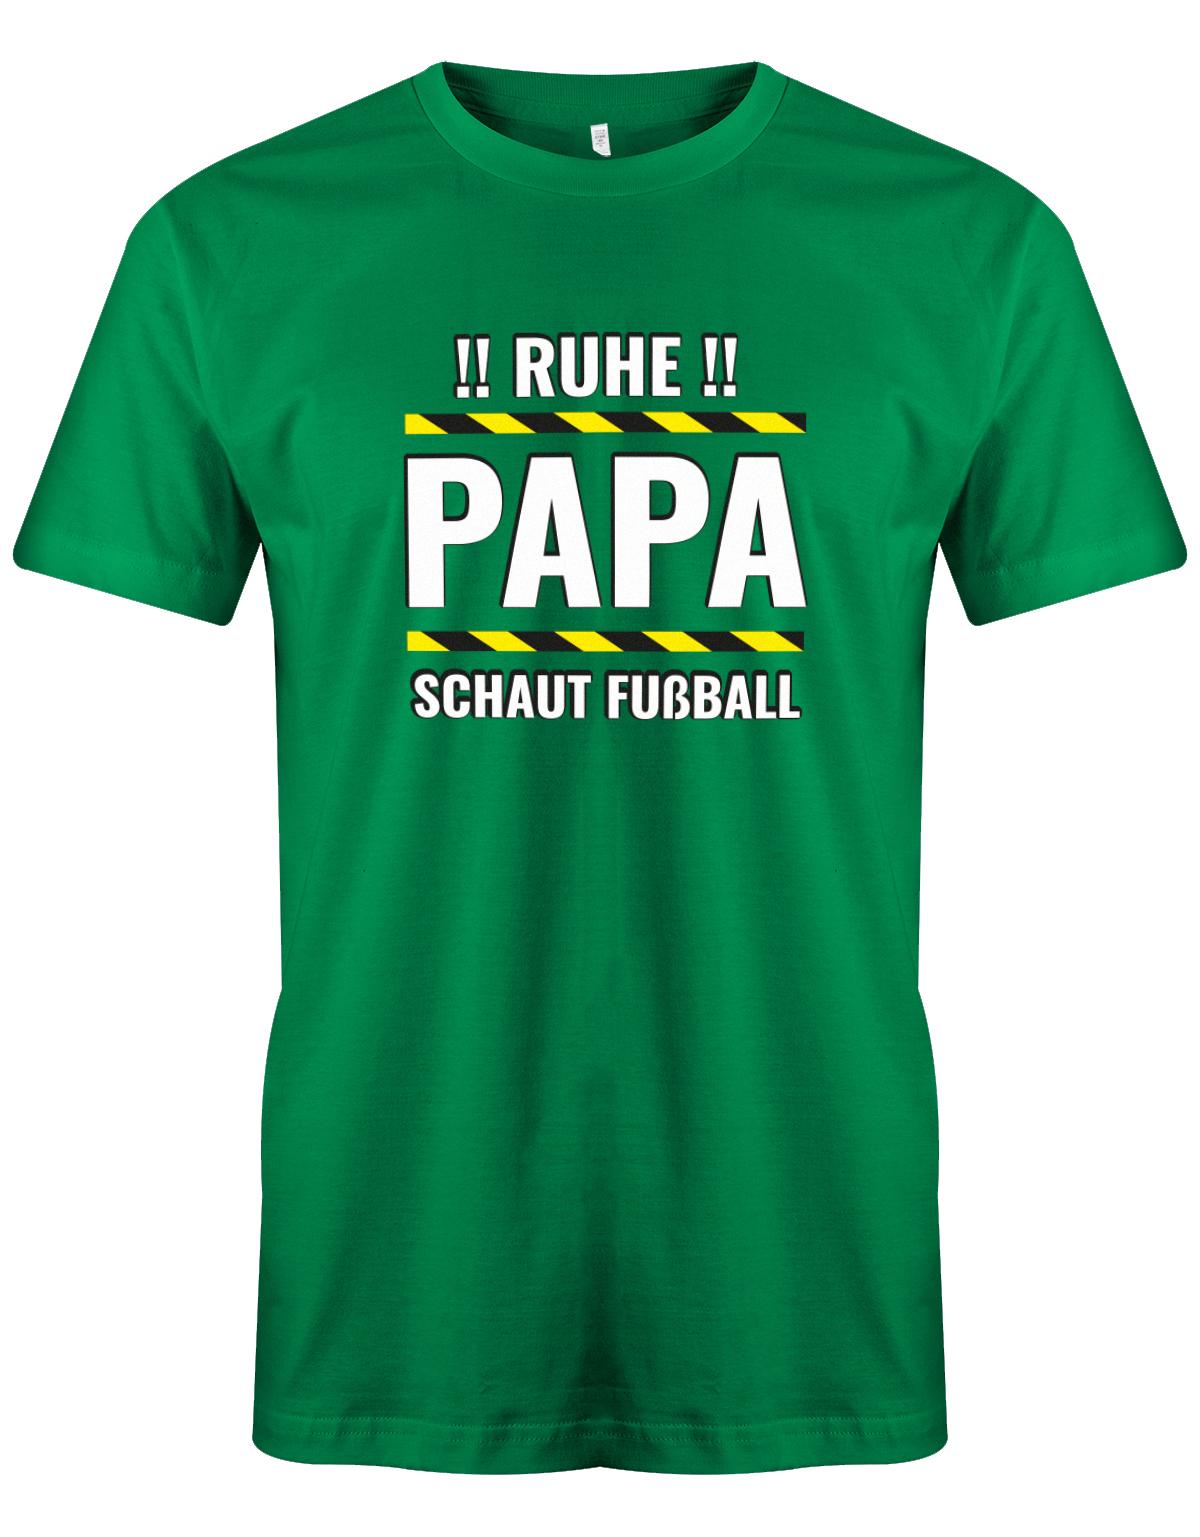 Ruhe-Papa-schaut-Fussball-Herren-Shirt-Gruen